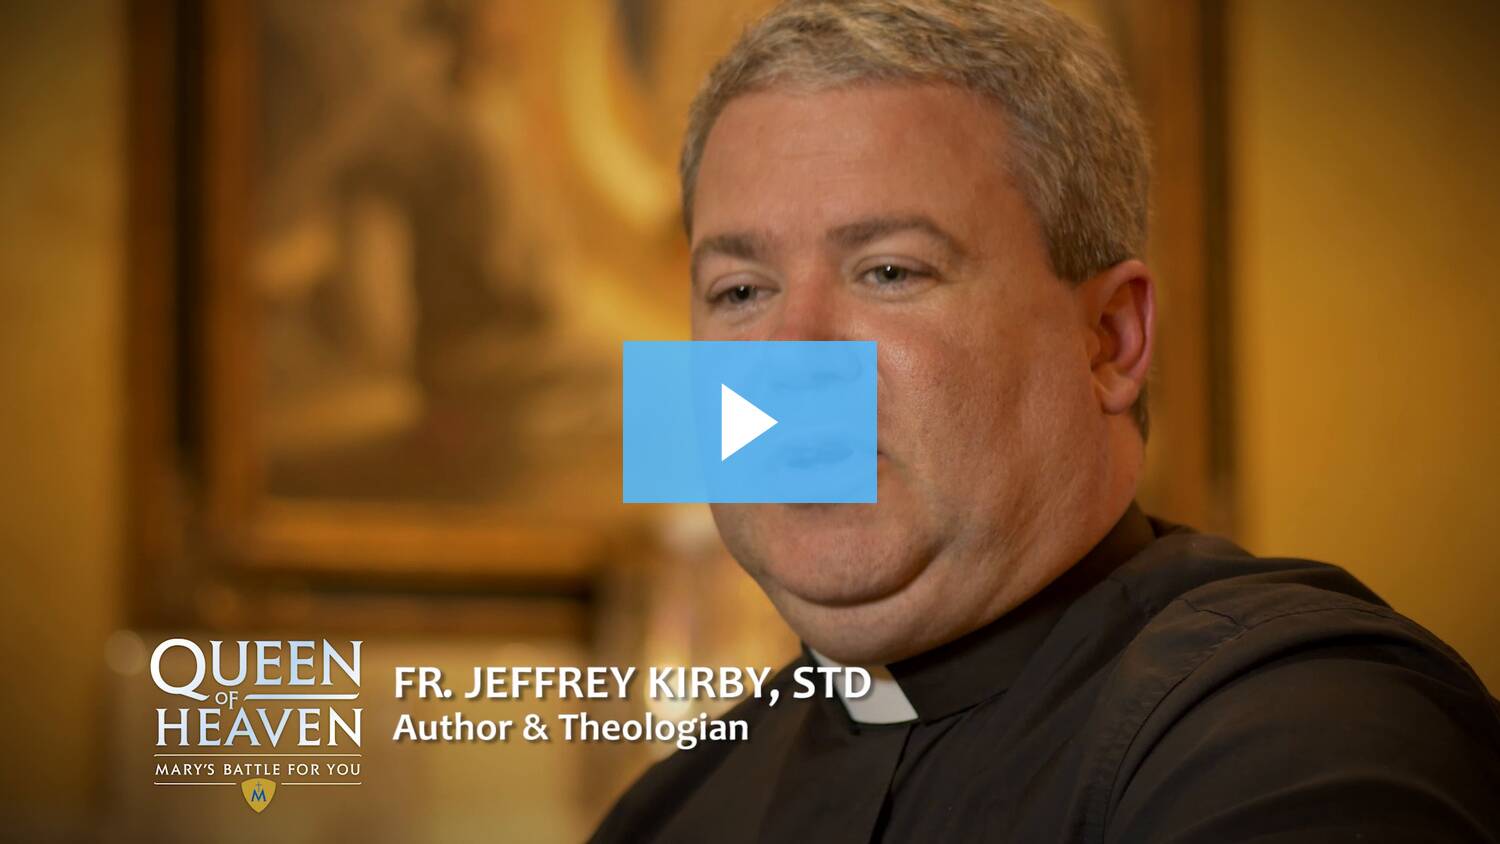 Fr. Jeffrey Kirby